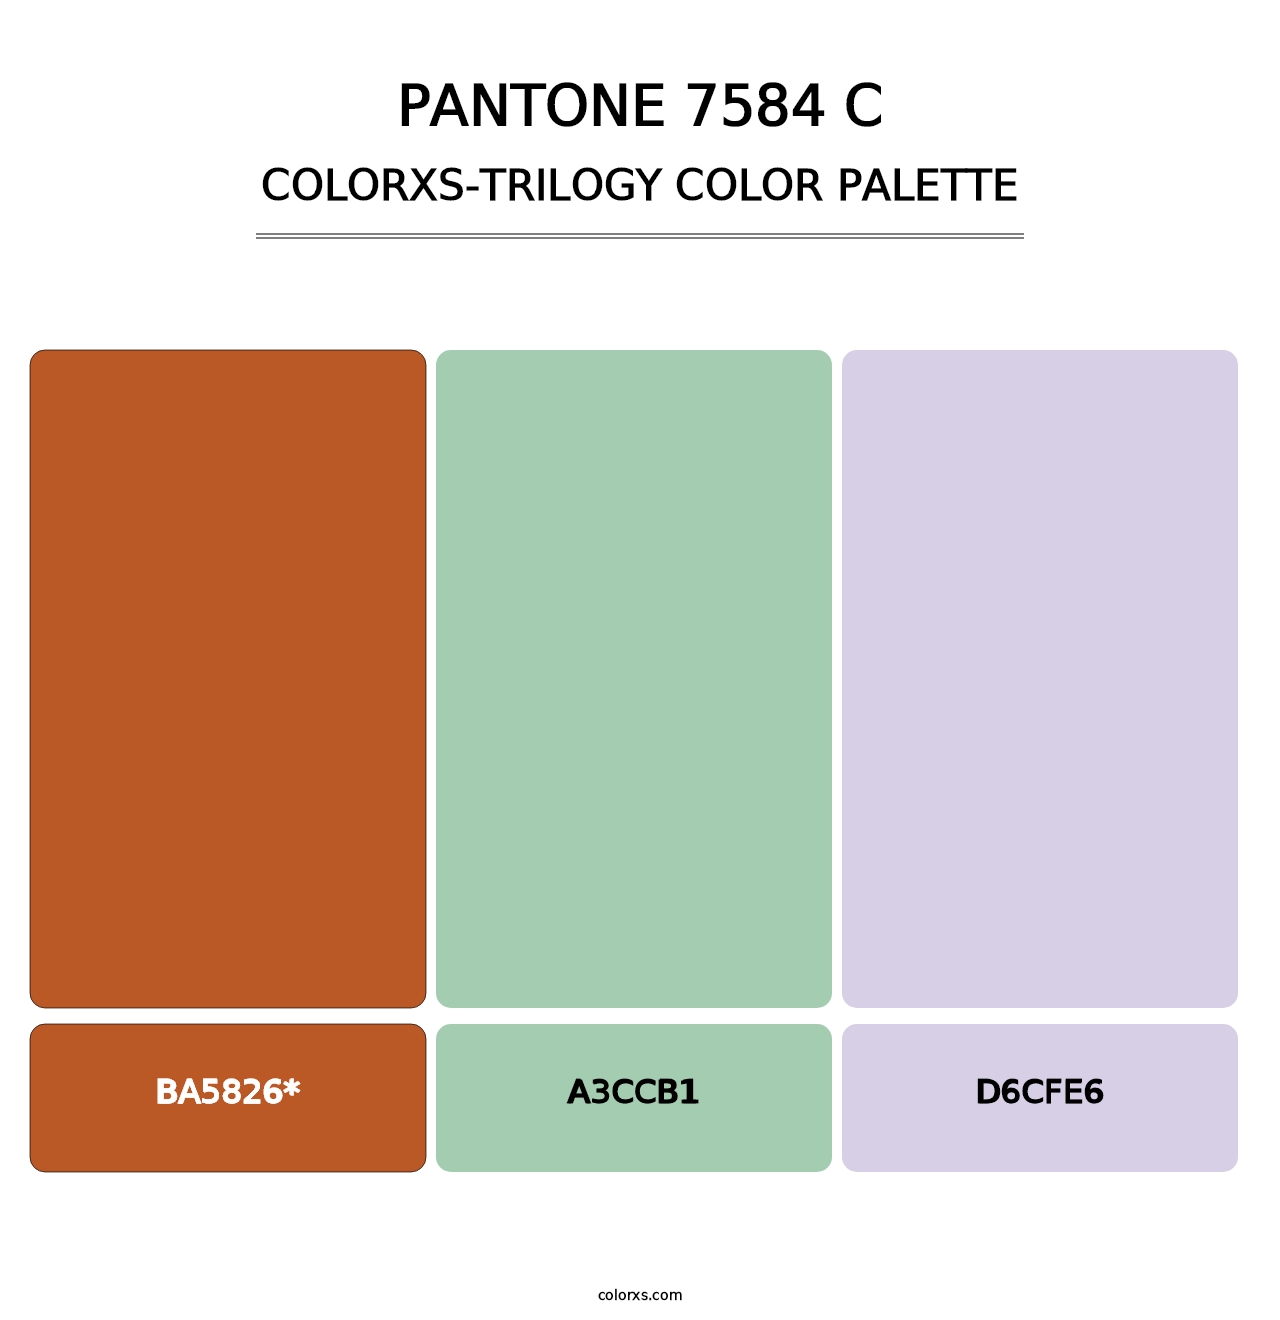 PANTONE 7584 C - Colorxs Trilogy Palette